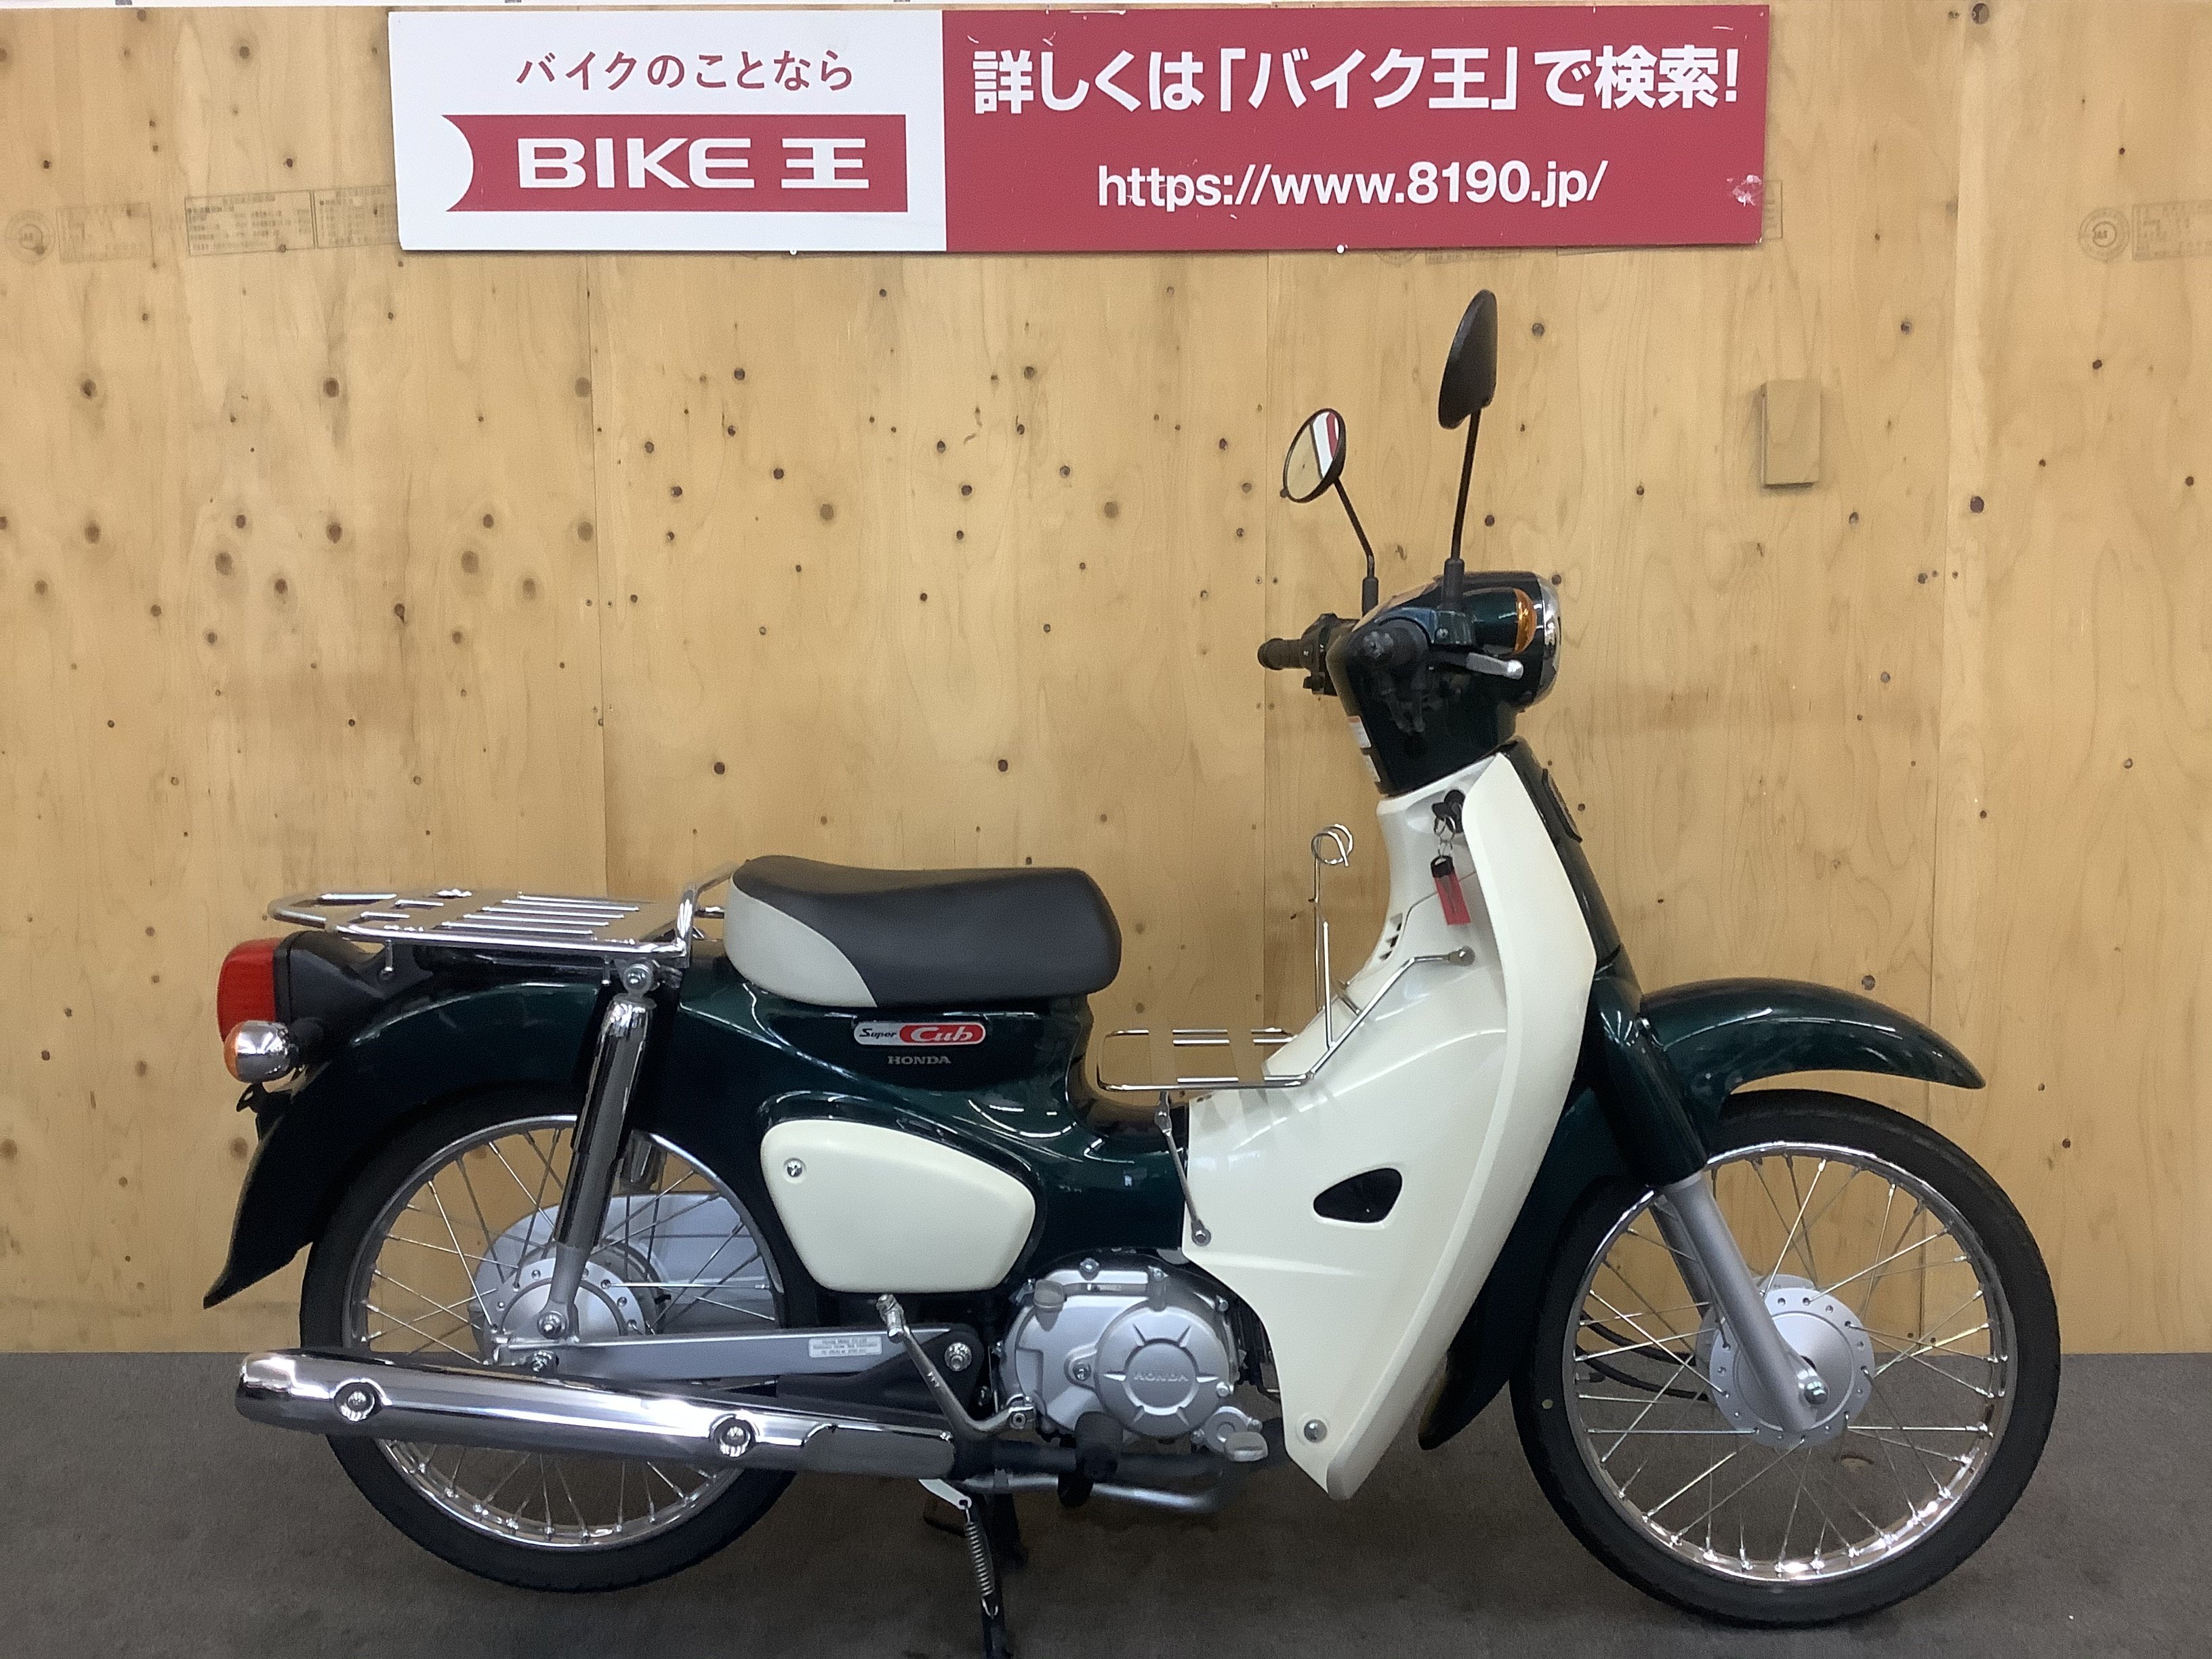 販売中です‼️上三川 HONDA スーパーカブ 50cc バイク 車体 カブ 